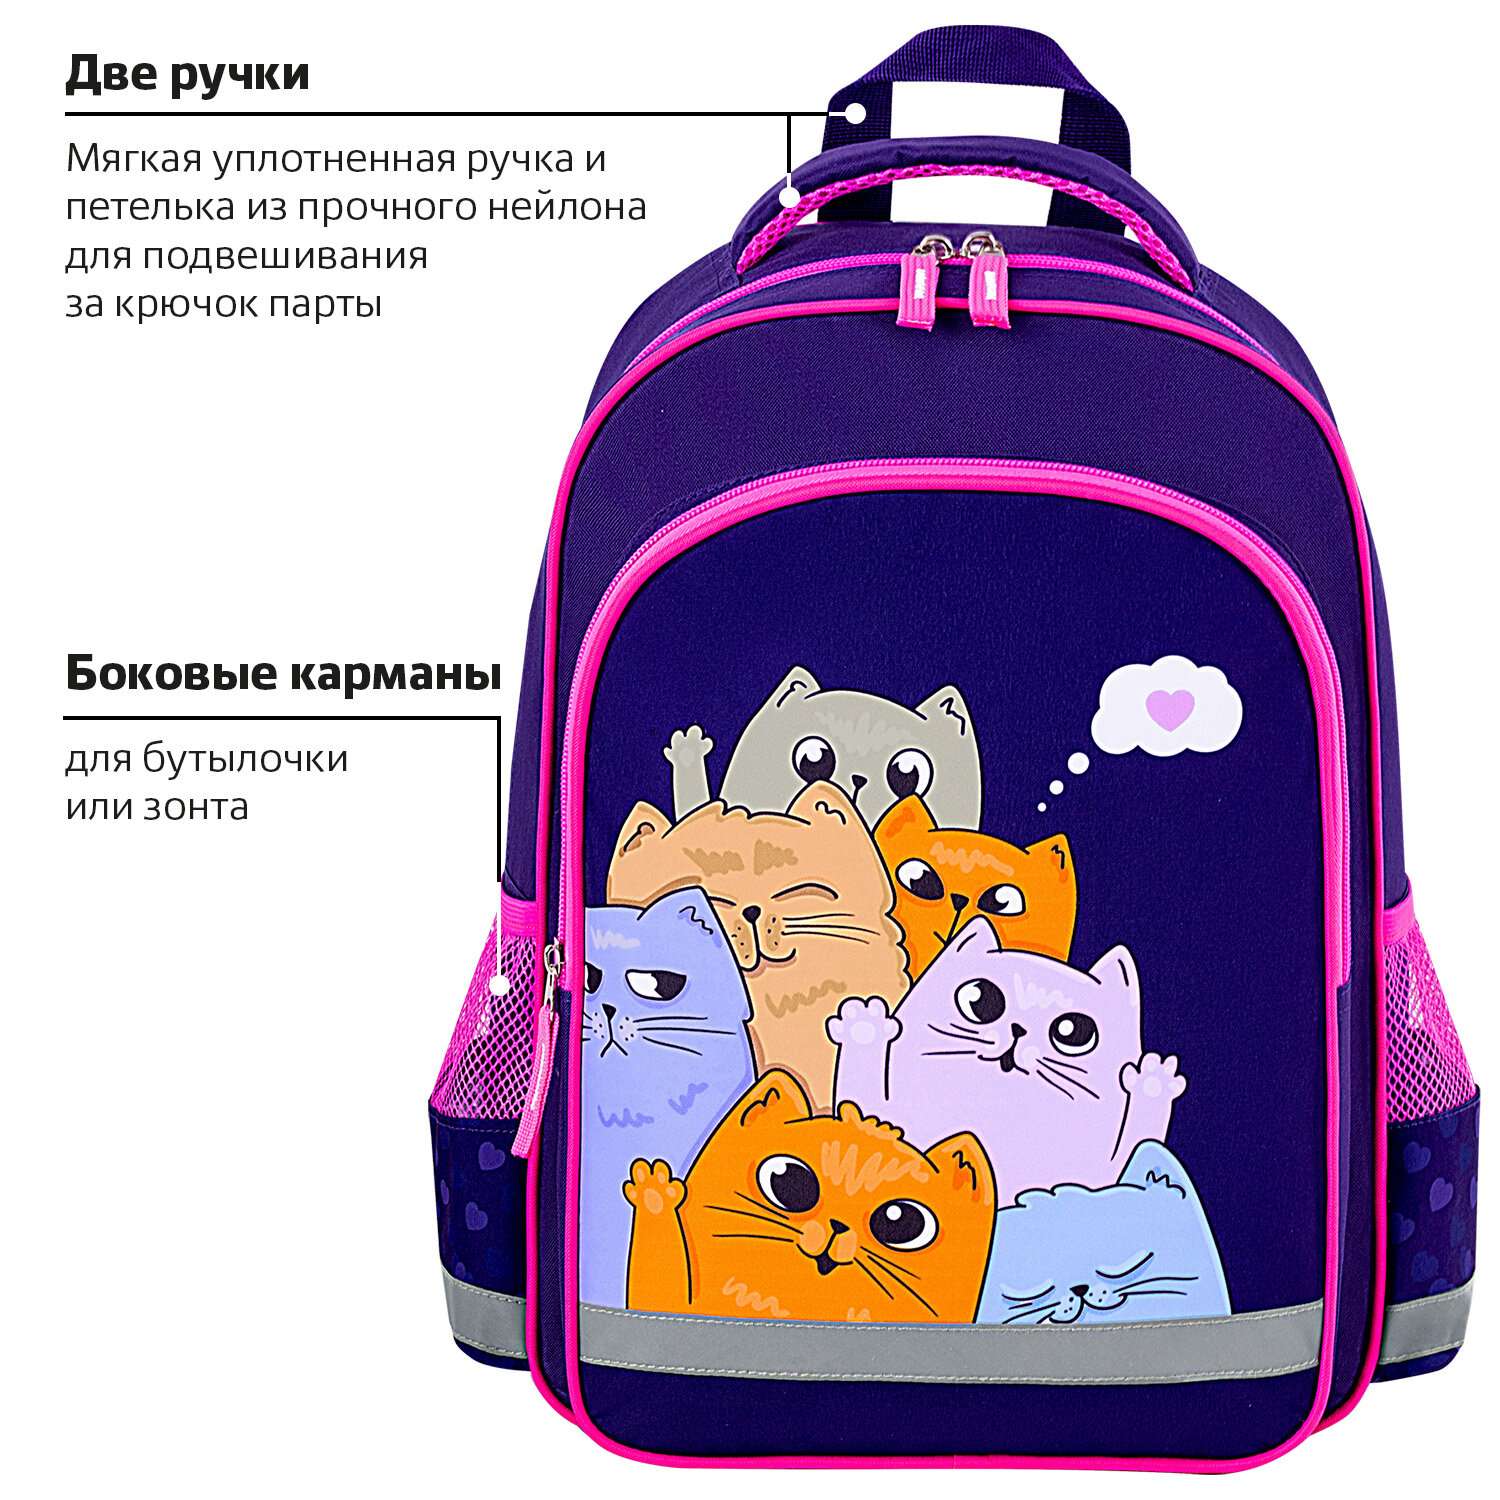 Рюкзак школьный Пифагор для девочки детский в 1 класс - фото 9